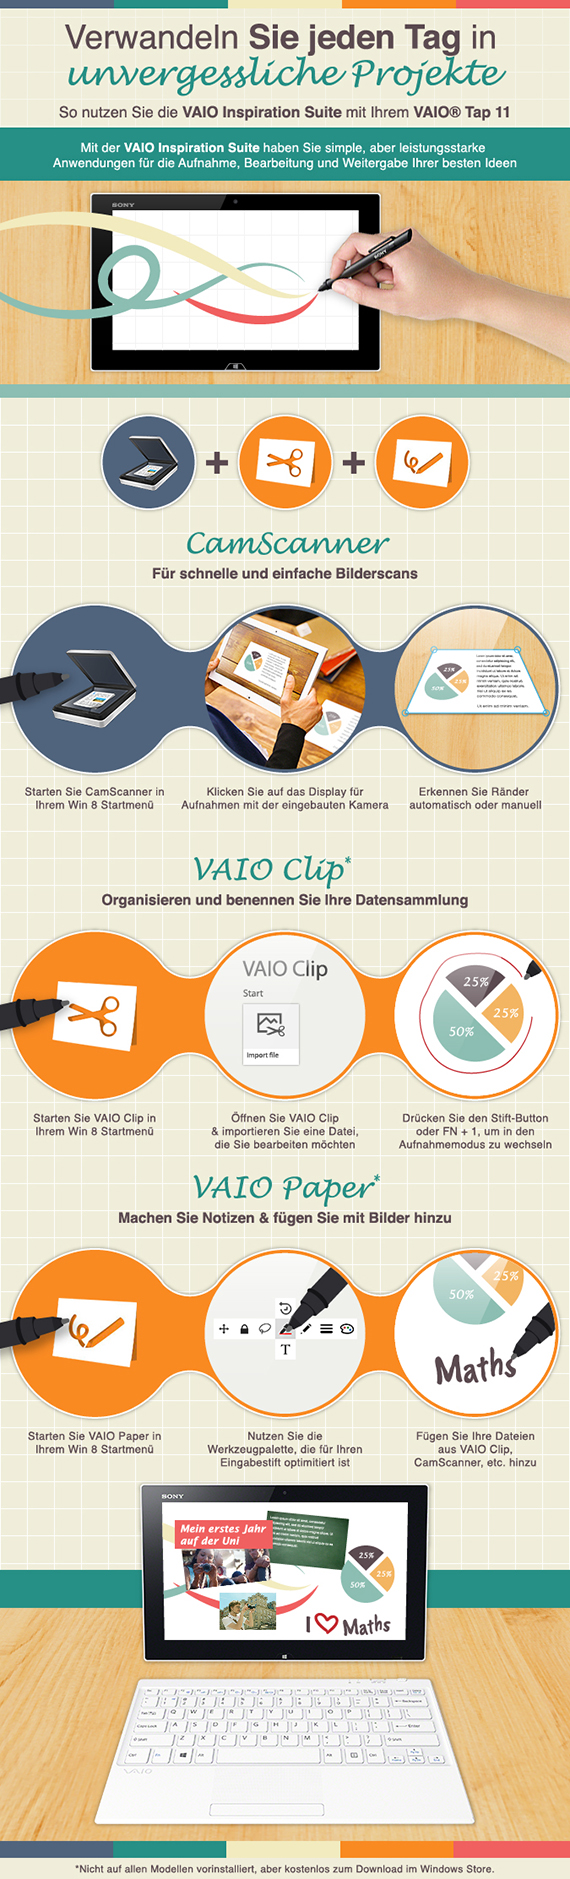 So nutzen Sie die VAIO Inspiration Suite - Infographic